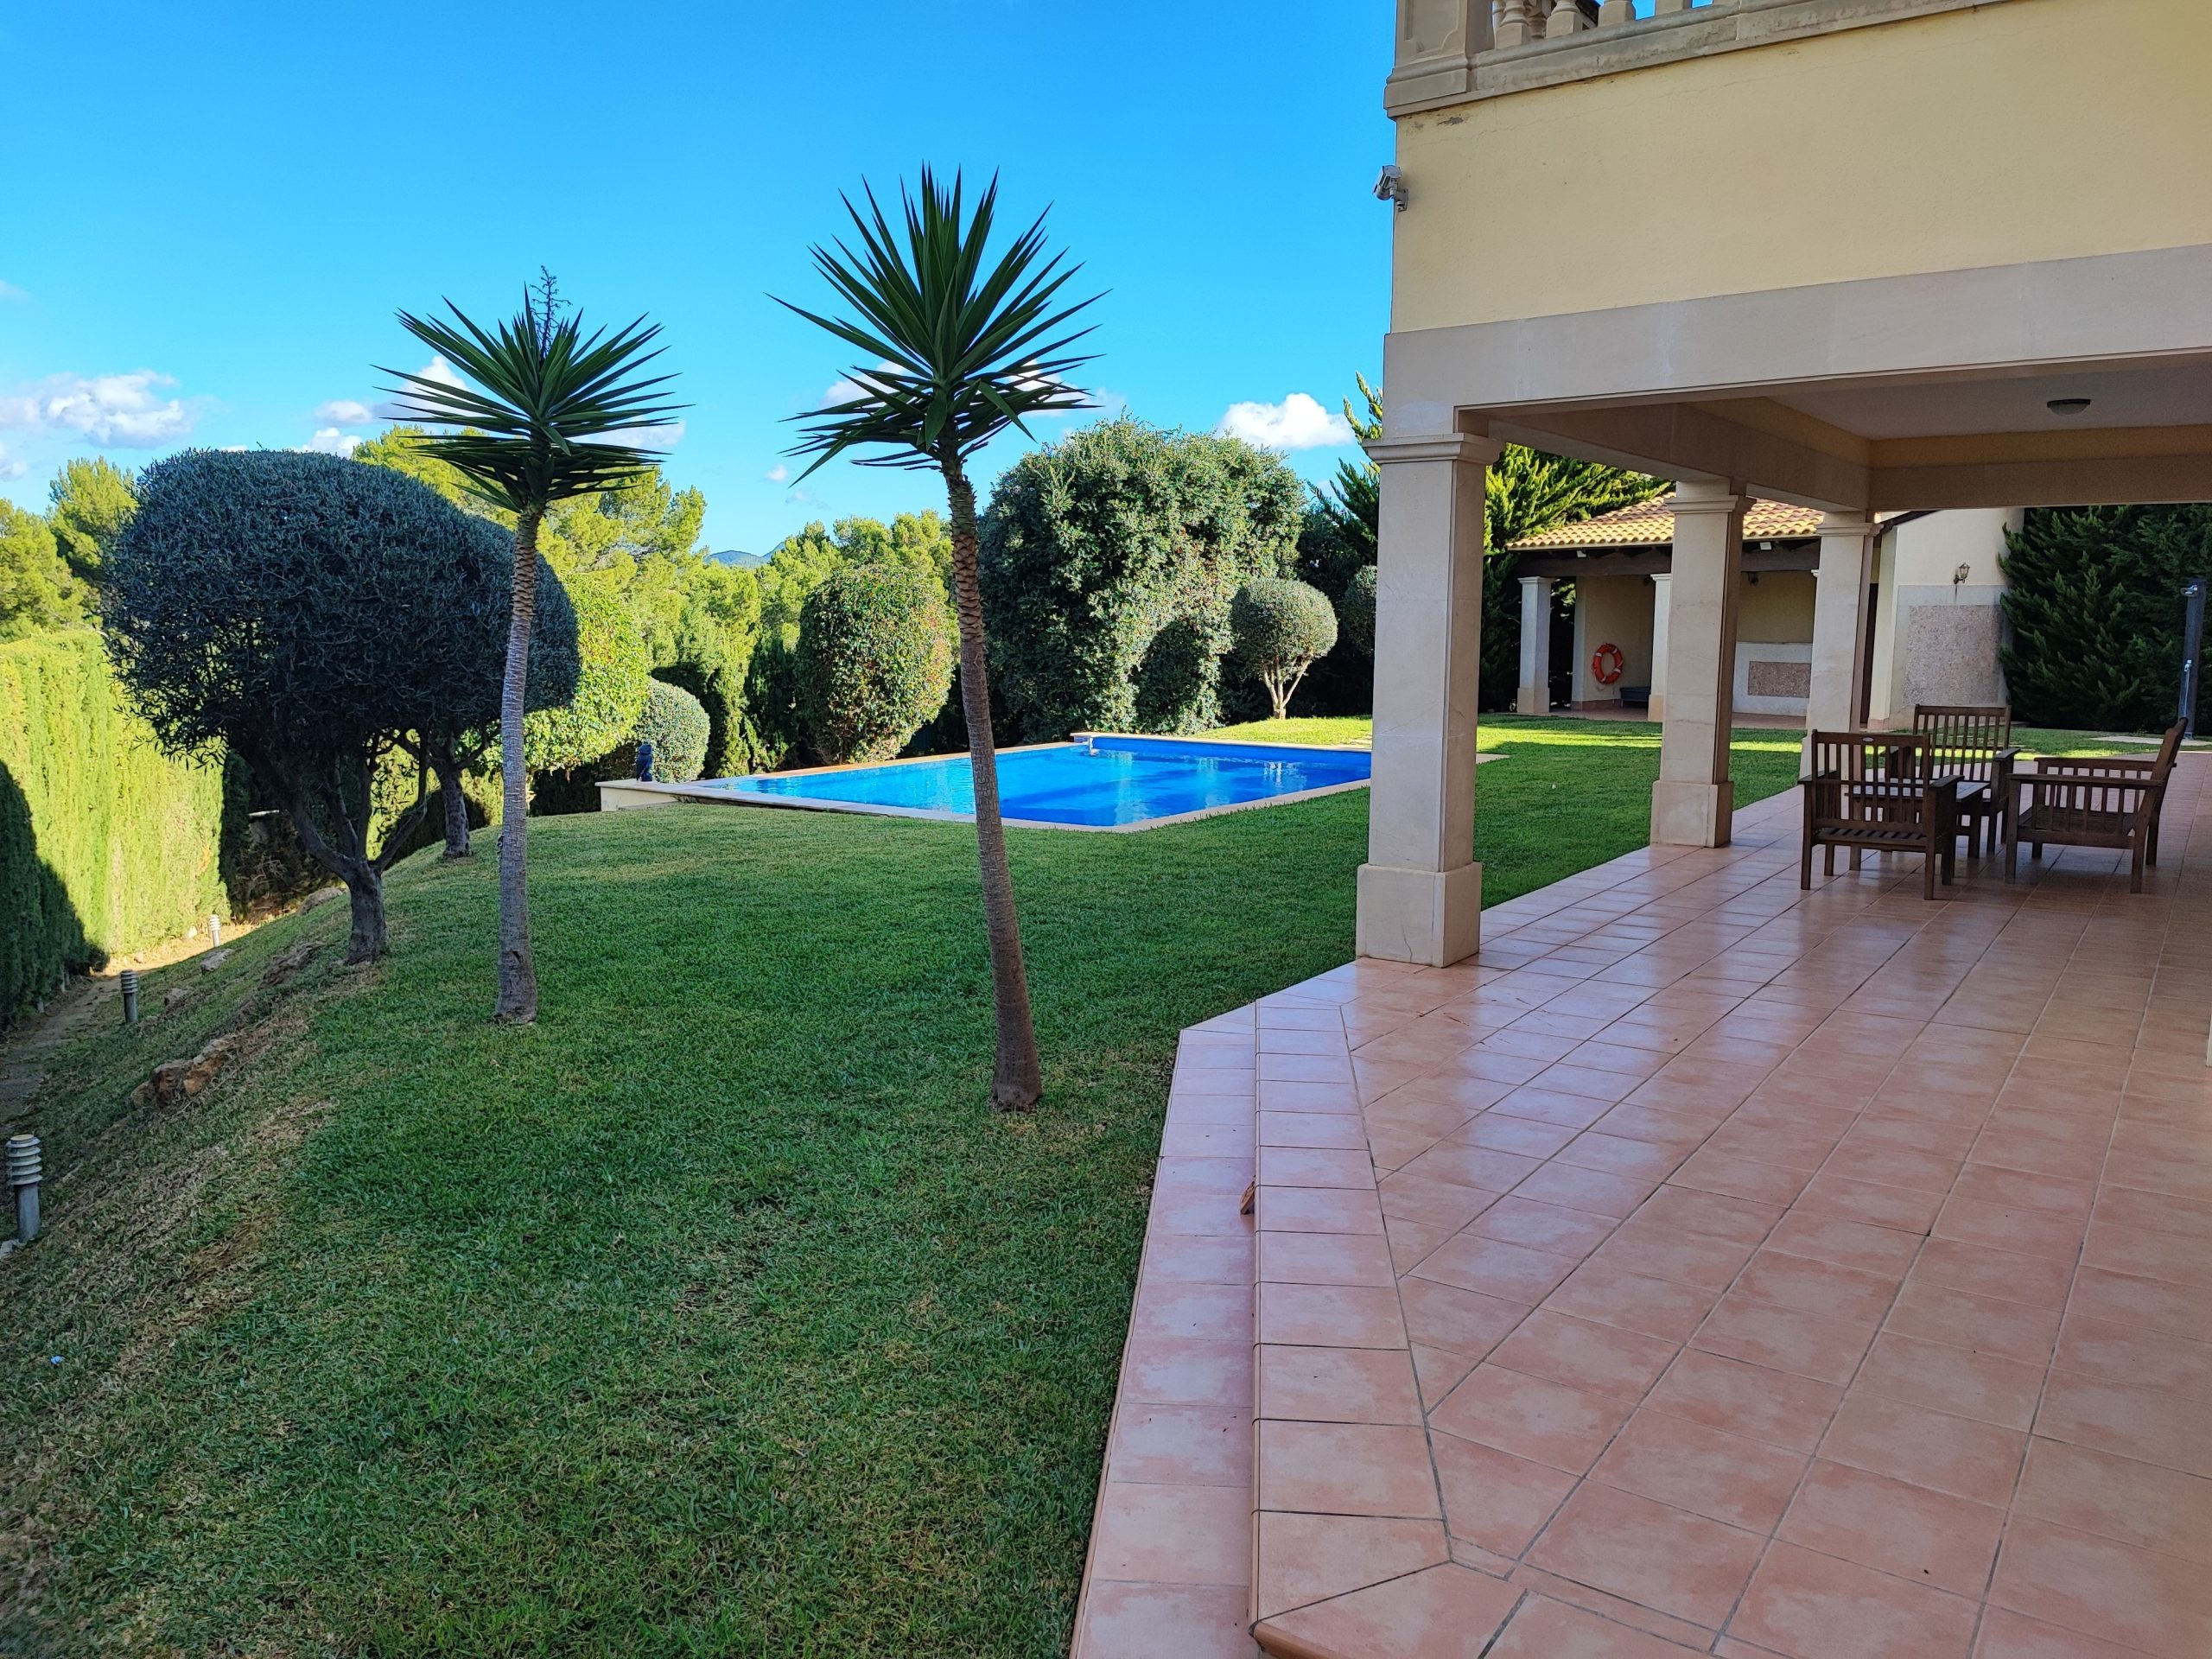 Villa en una tranquila zona residencial de Nova Sonta Ponsa, Mallorca con vistas al mar